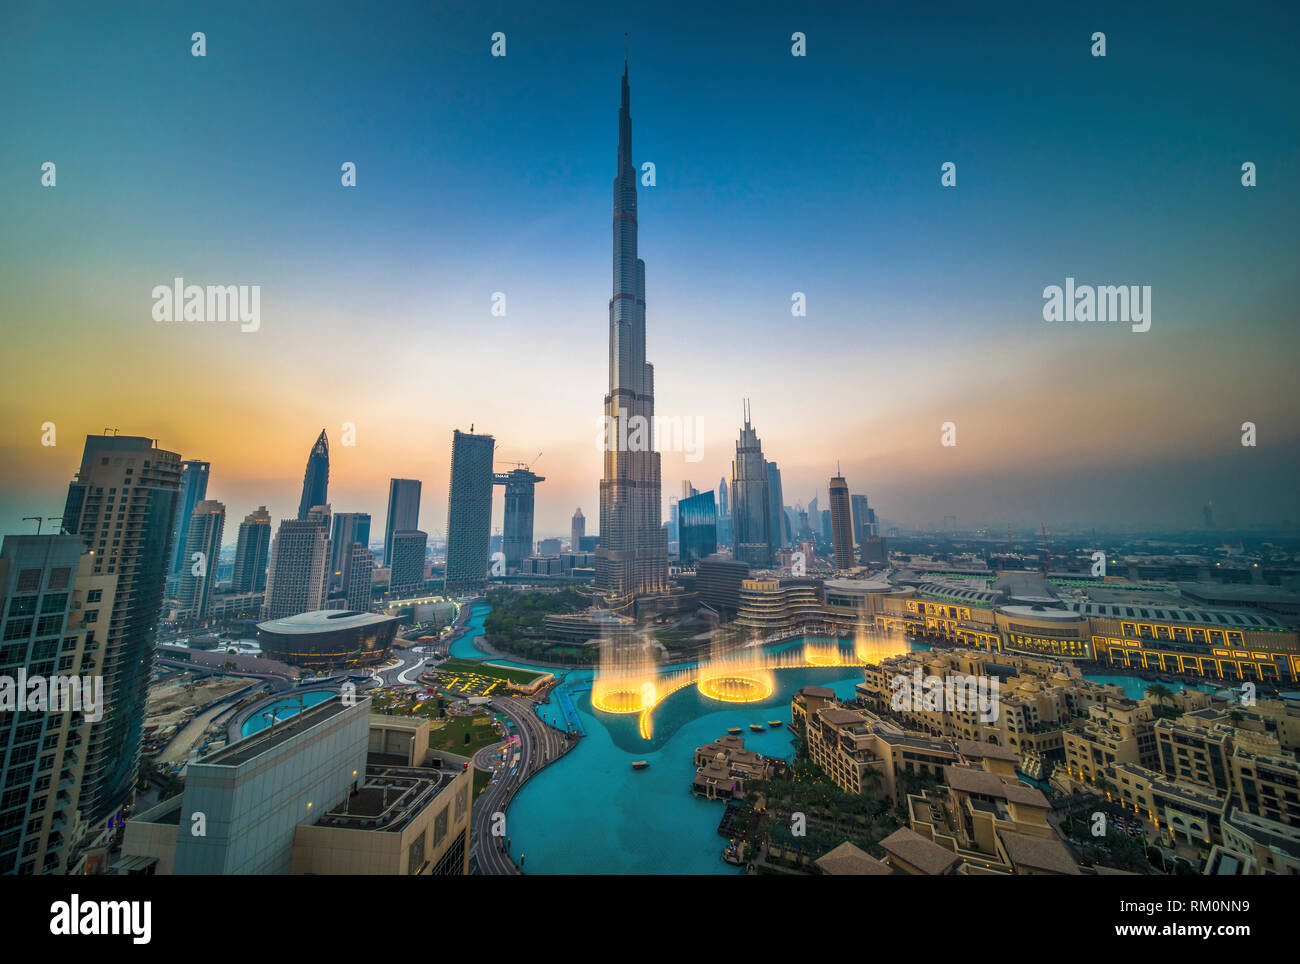 Der Burj Khalifa bei Sonnenuntergang in Dubai in den Vereinigten Arabischen Emiraten. Stockfoto